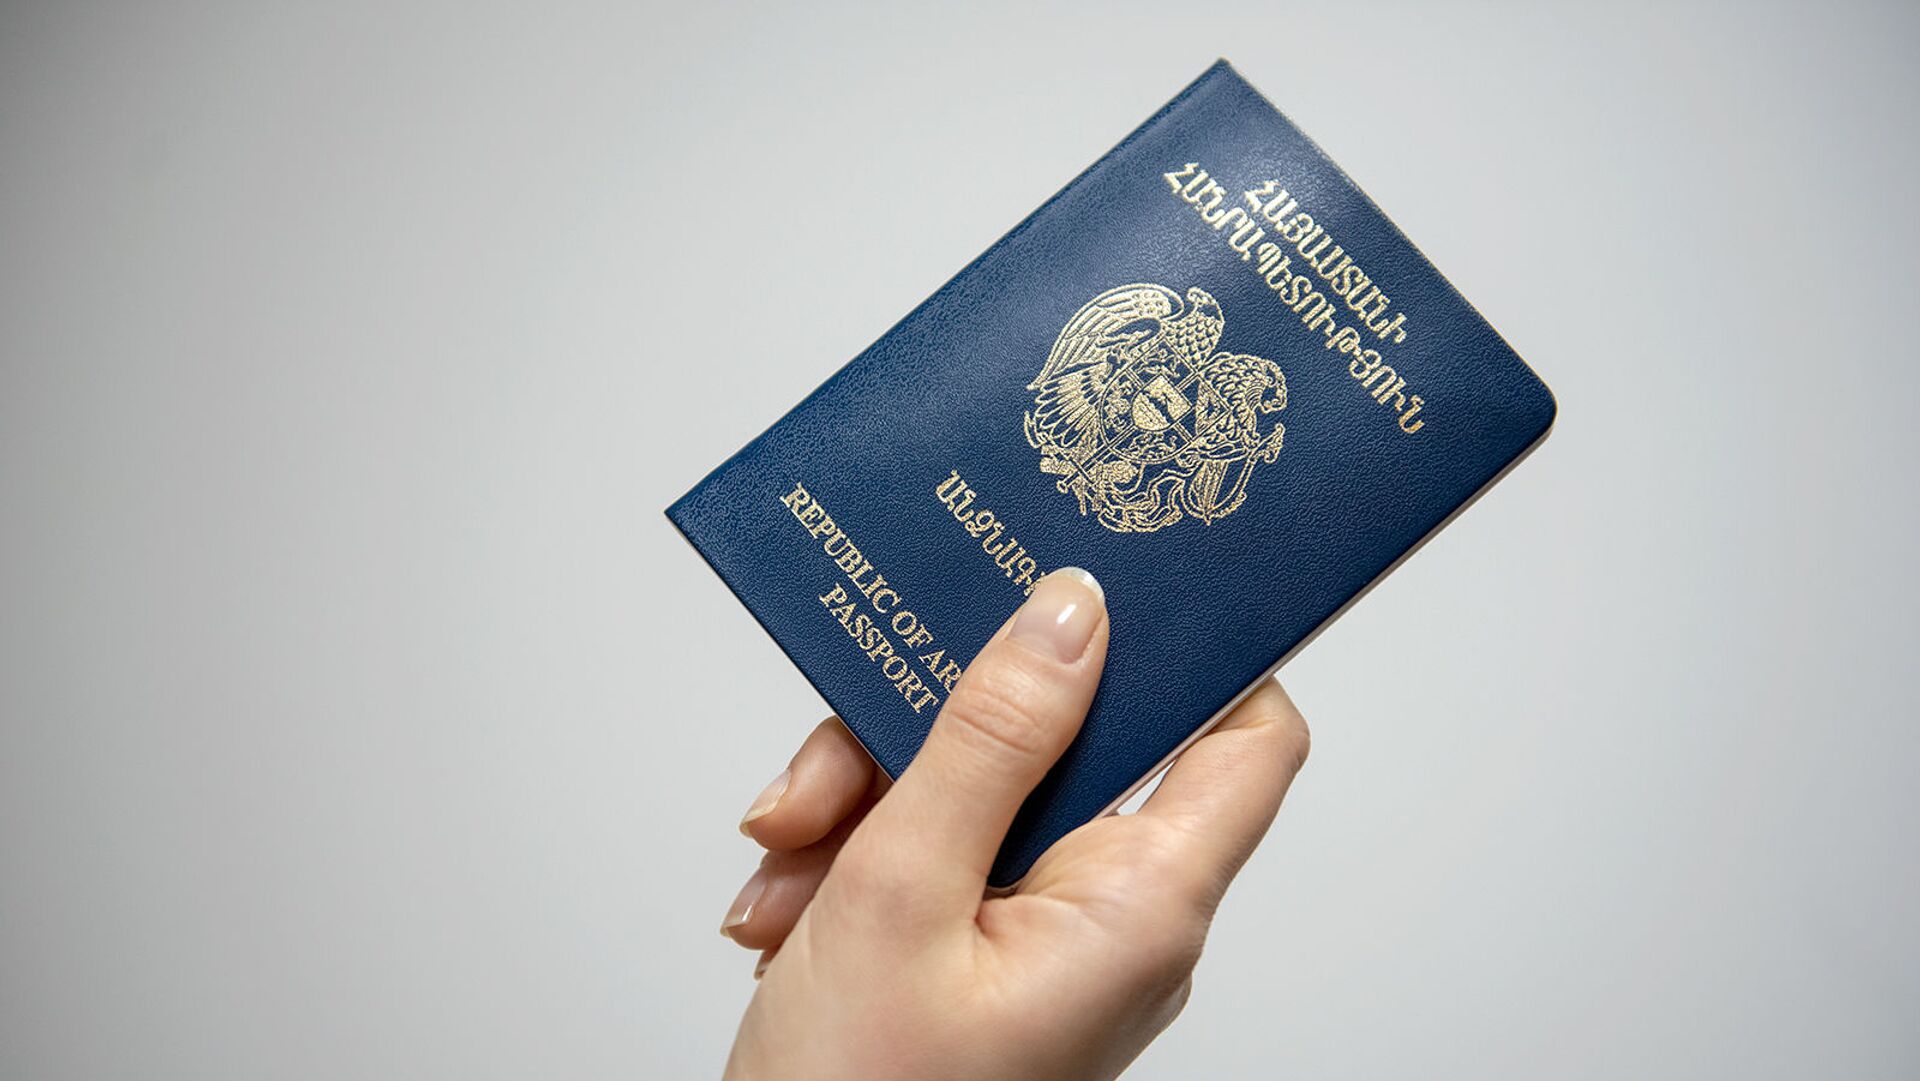 Паспорт Армении